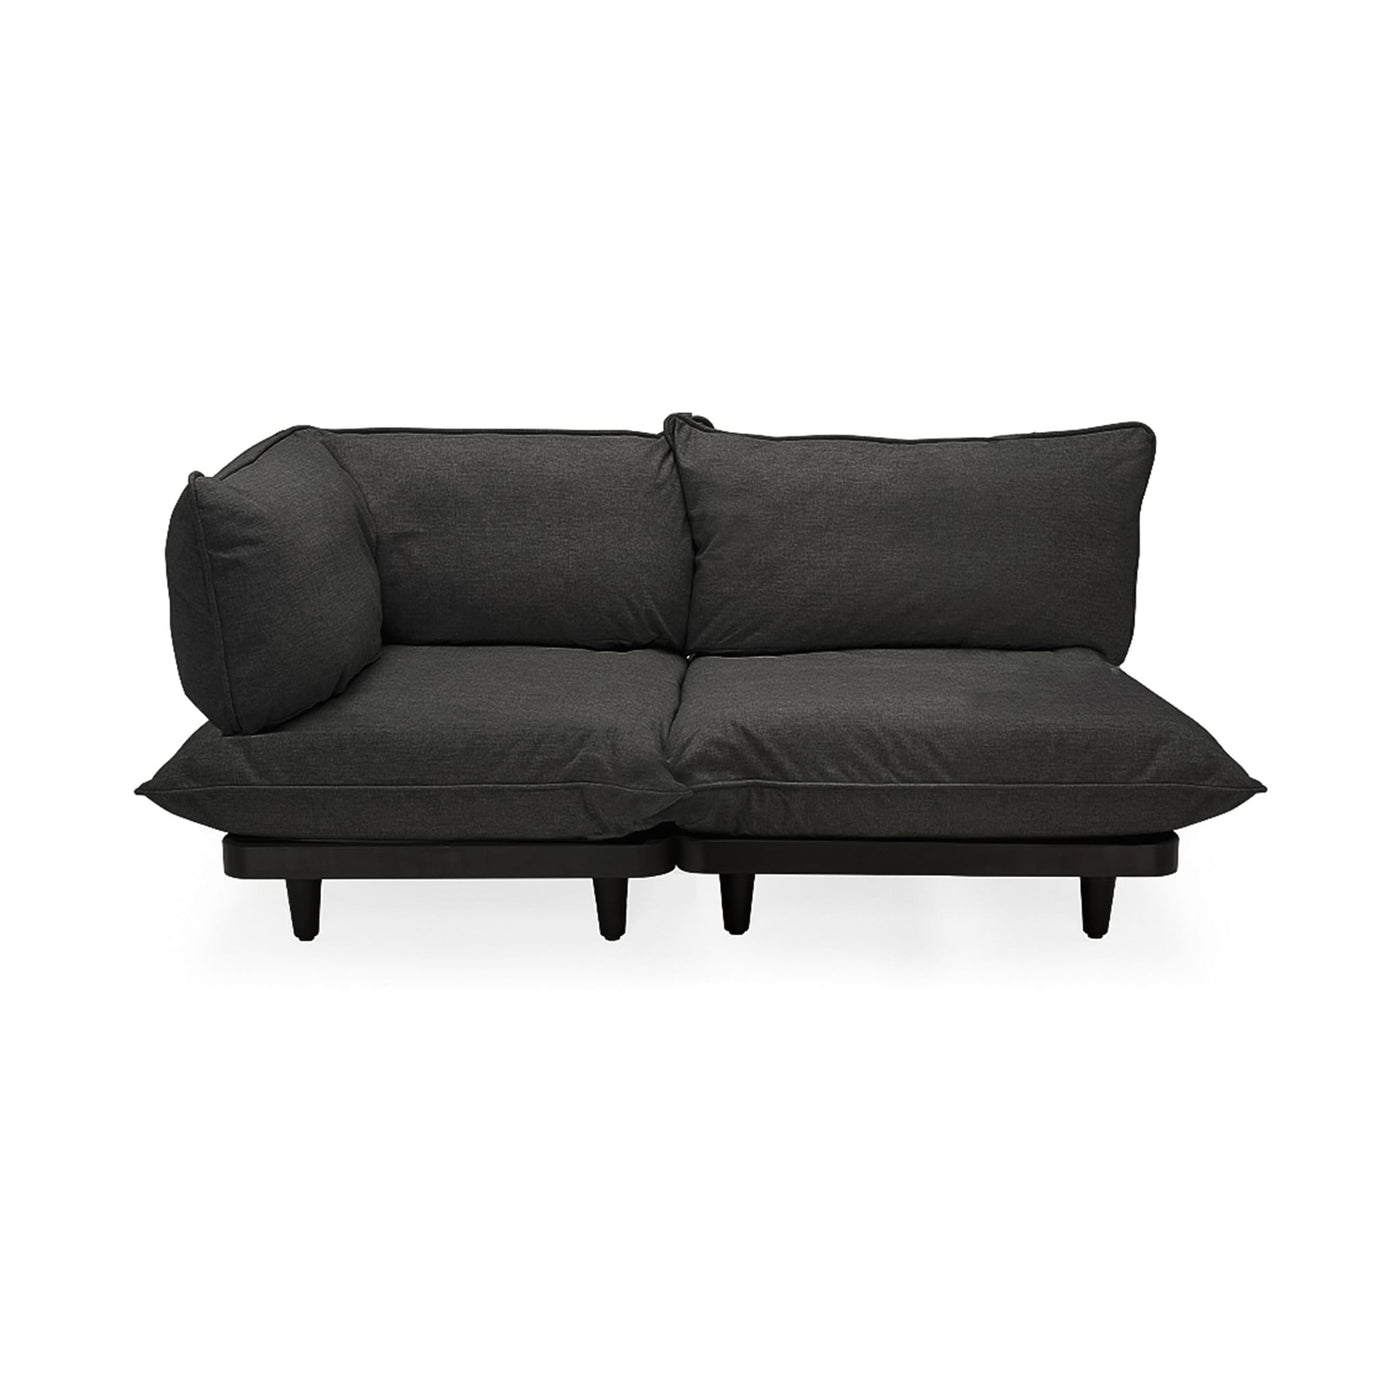 Découvrez le sofa Paletti de Fatboy : le summum des loisirs en plein air, résistant et élégant. Gris tonitruant